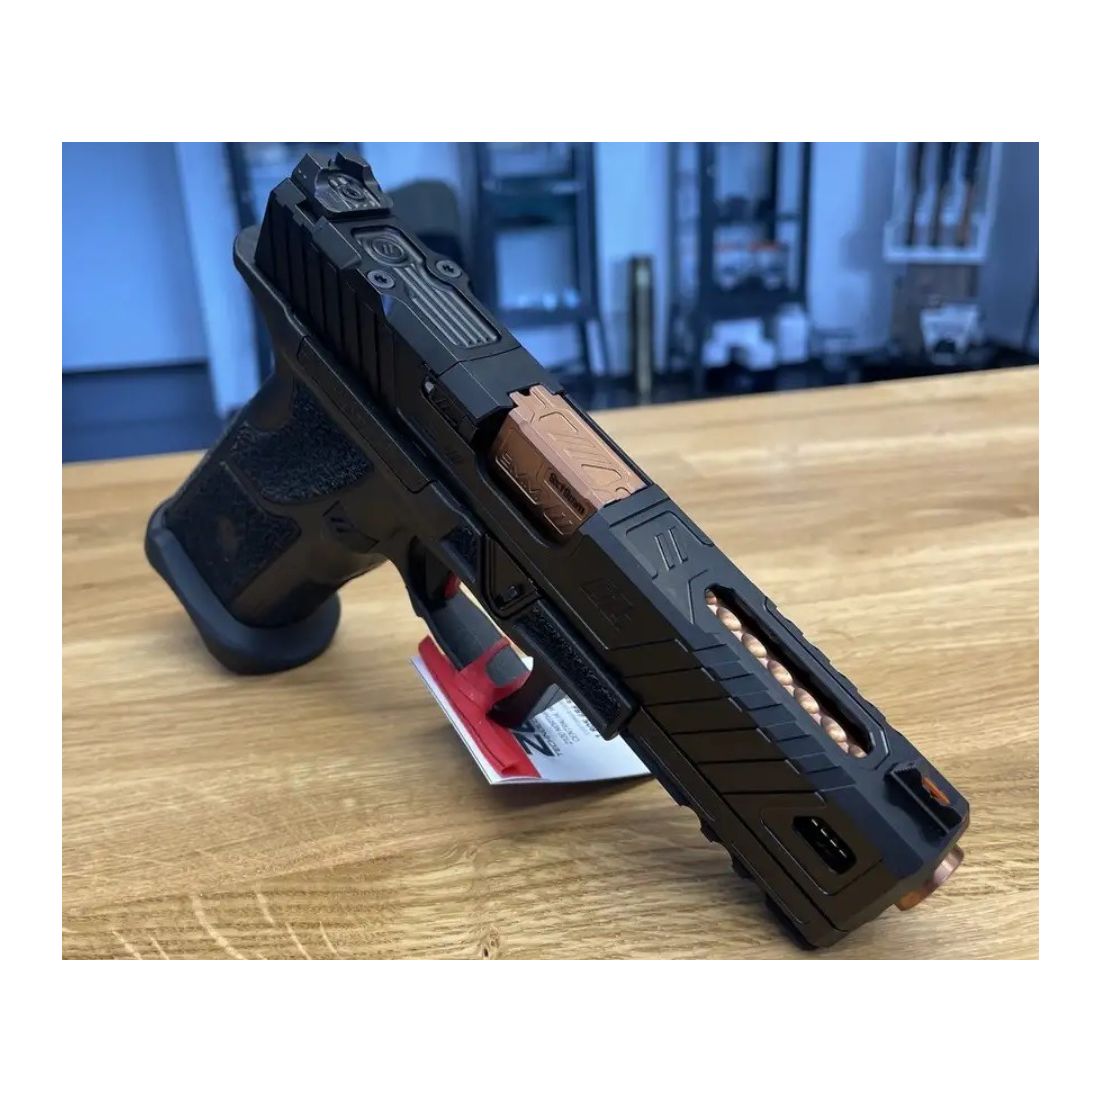 ZEV OZ9 Elite im Kaliber 9mm Luger